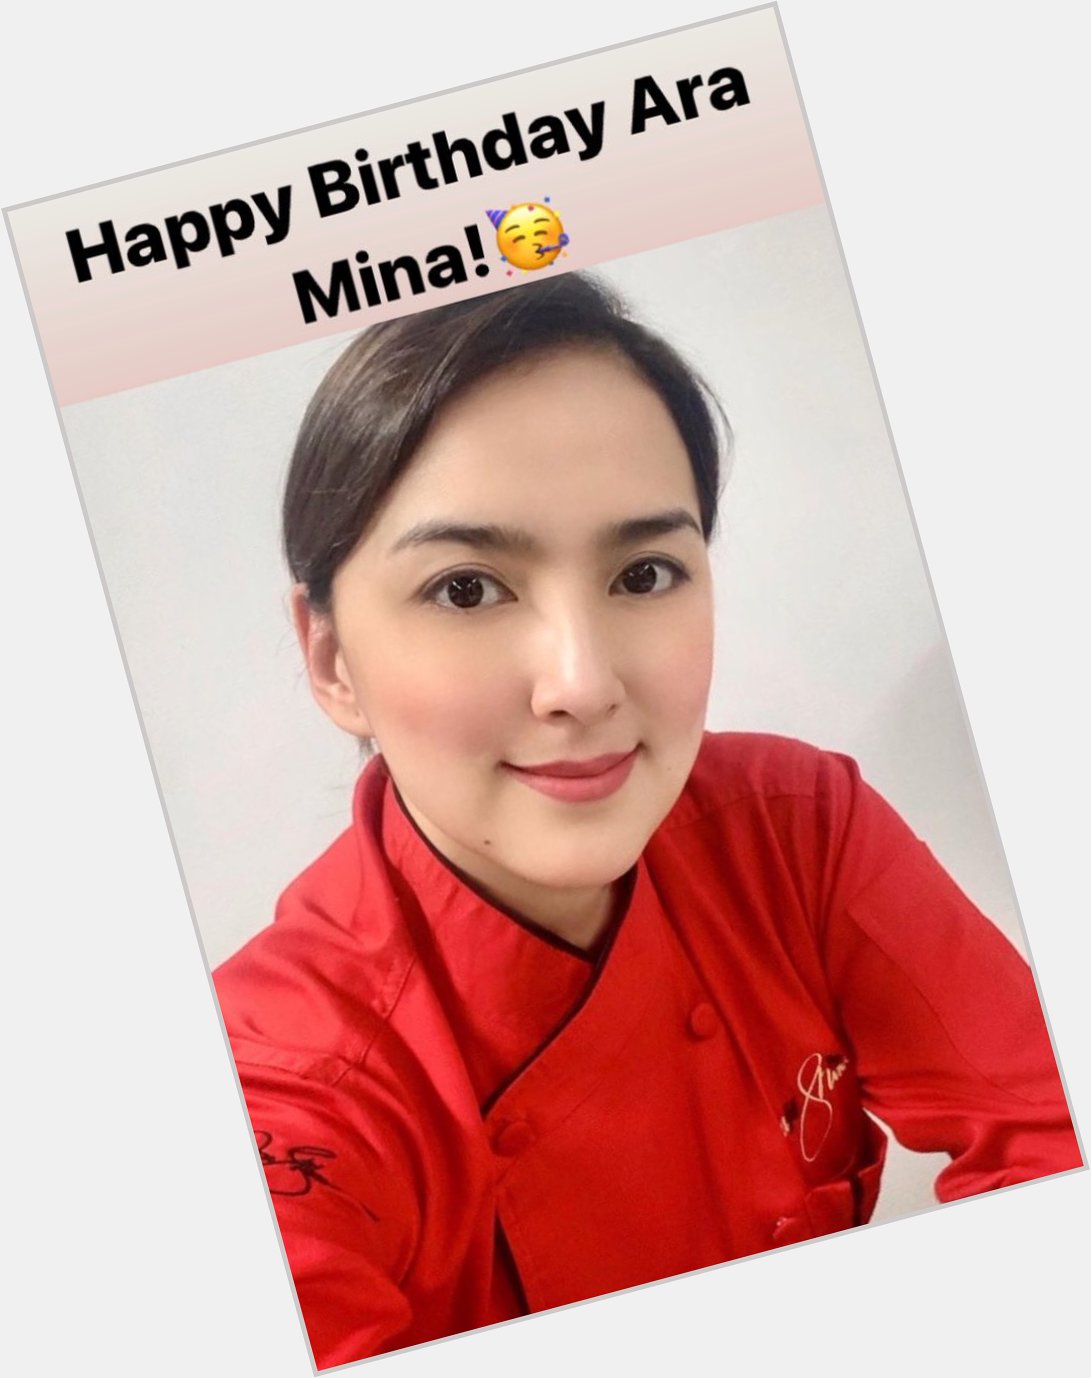 Happy Birthday Ara Mina!  